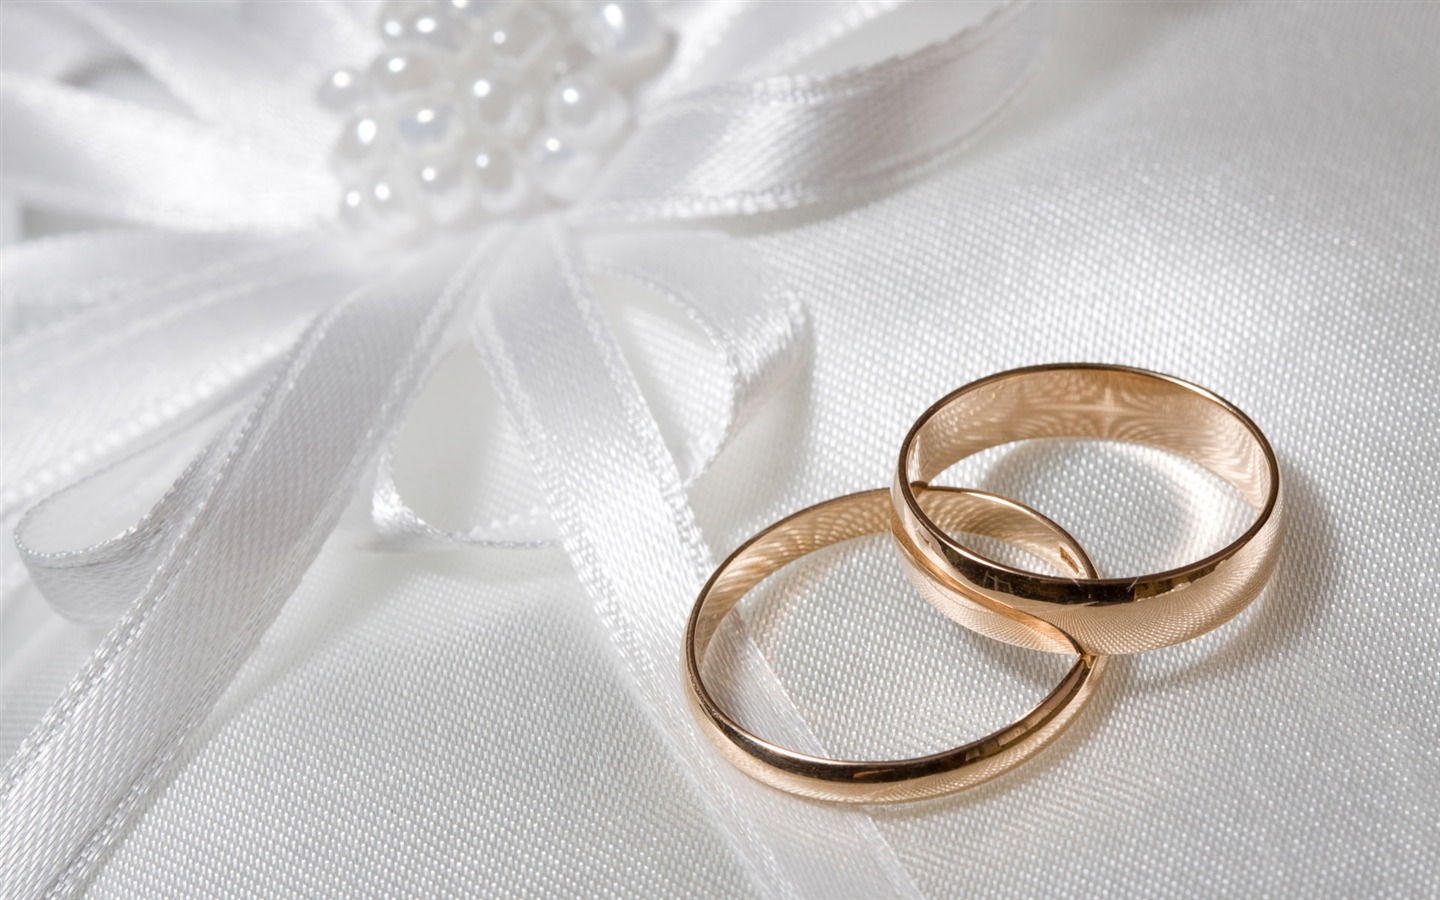 Mariage et papier peint anneau de mariage (2) #14 - 1440x900